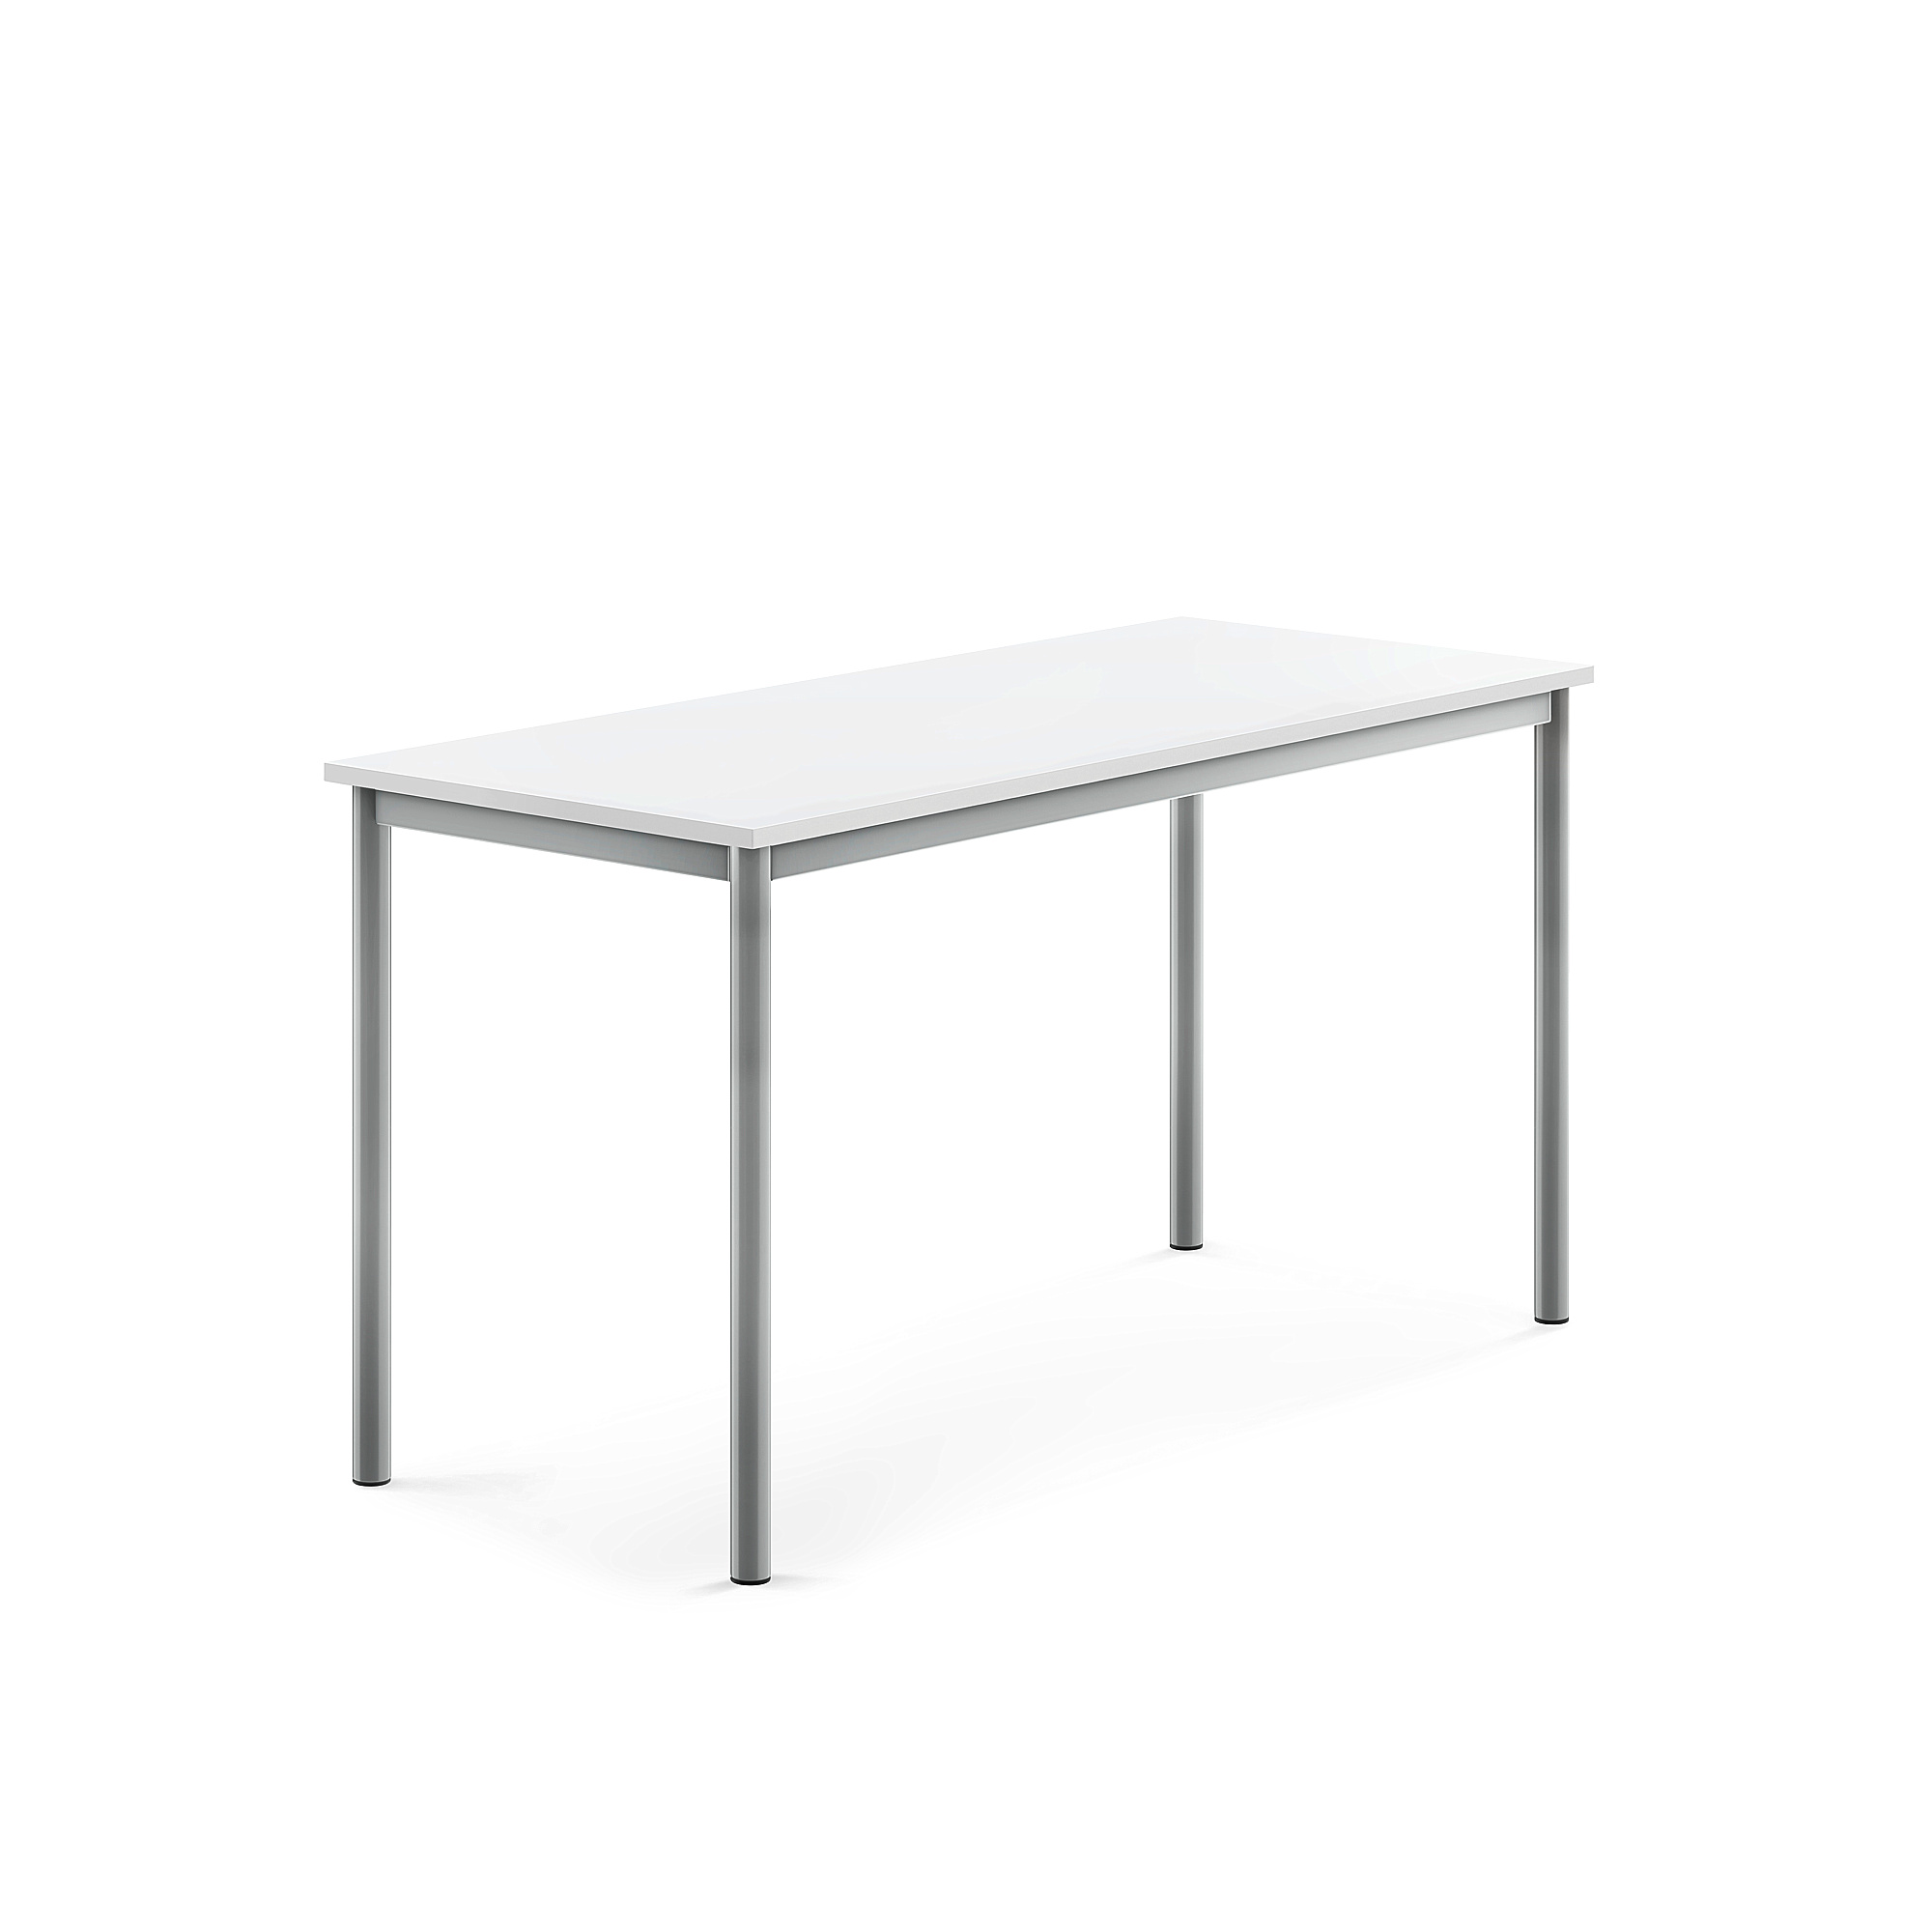 Stůl BORÅS, 1400x600x720 mm, stříbrné nohy, HPL deska, bílá